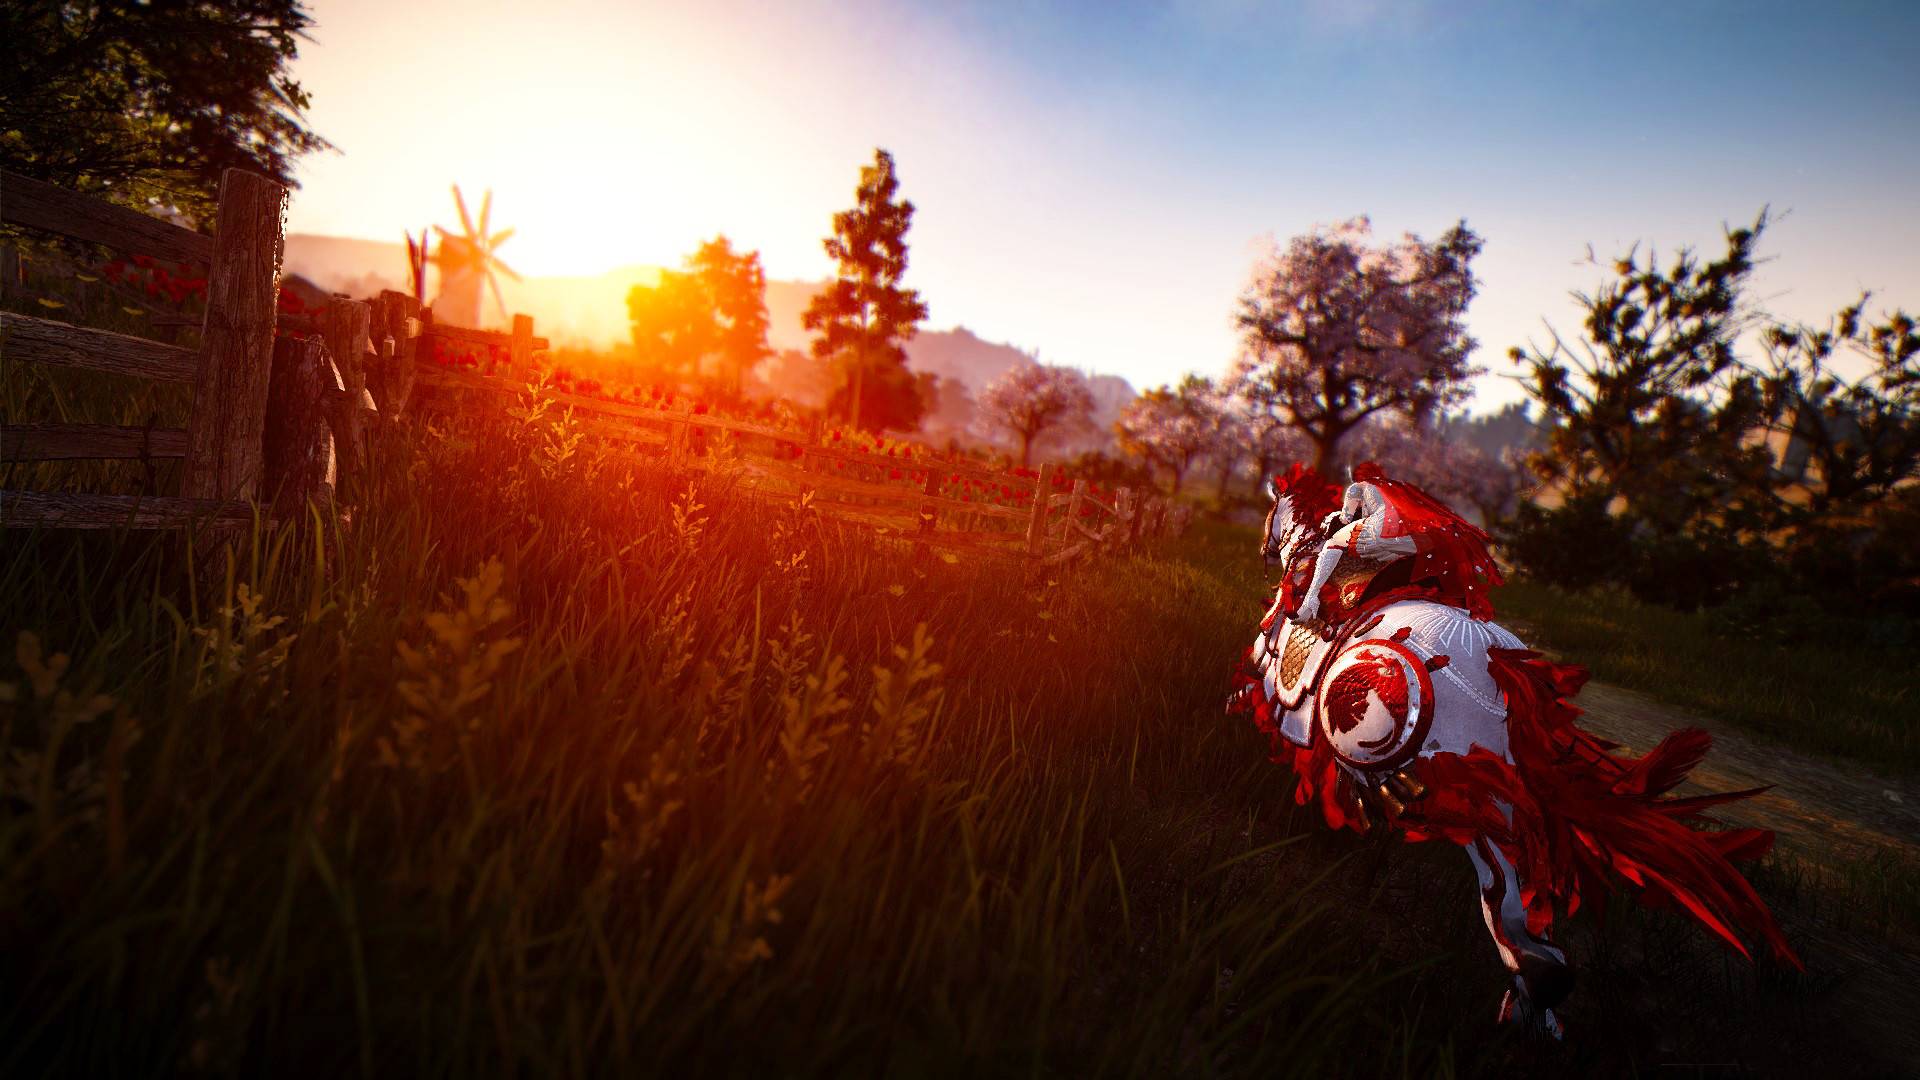 เกม MMORPG ที่ดีที่สุด: Black Desert Online ภาพแสดงให้เห็นว่าชายคนหนึ่งขี่ม้าไปสู่พระอาทิตย์ตก